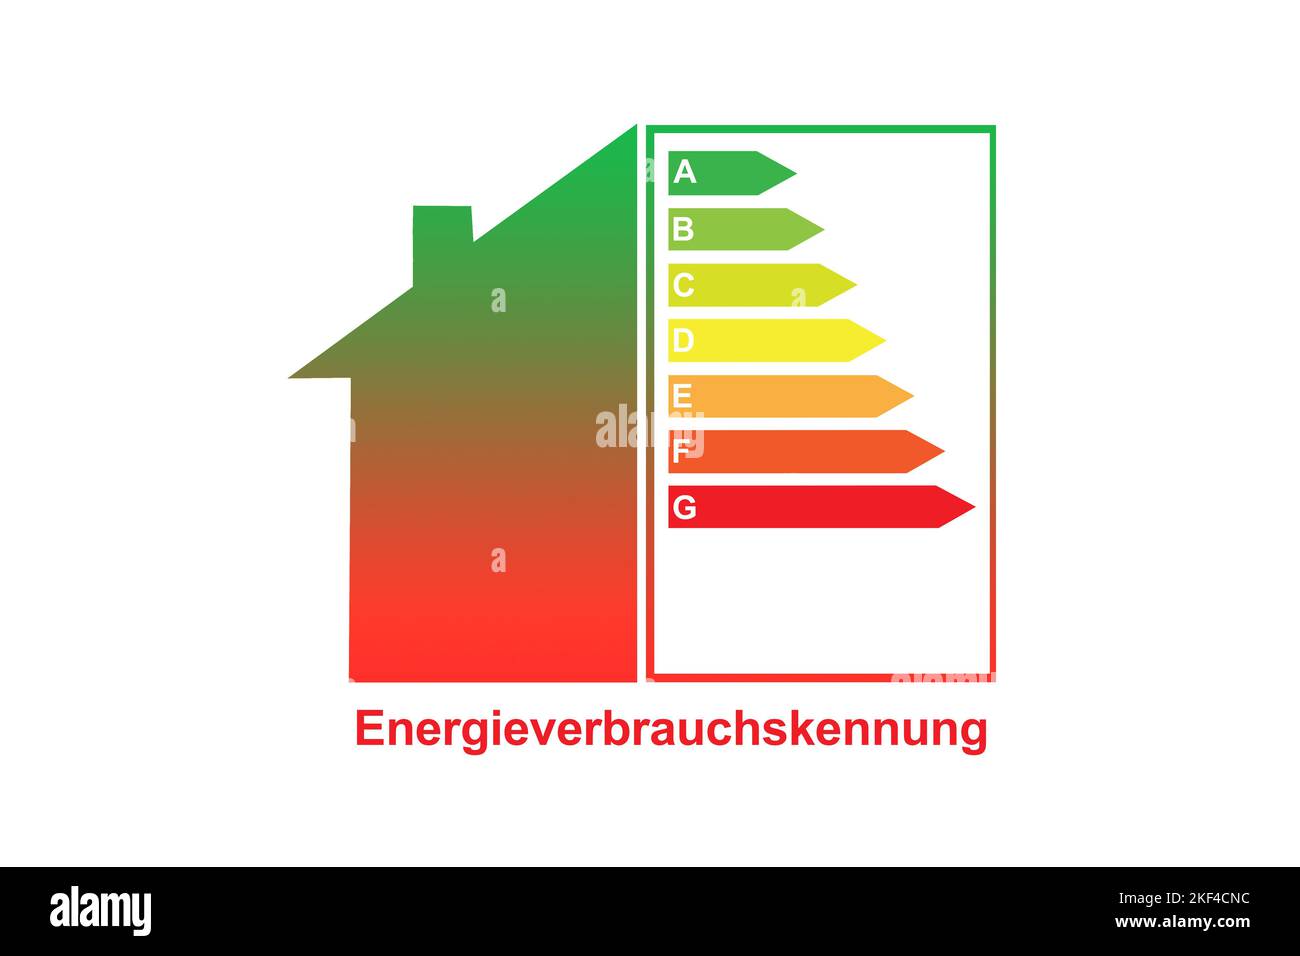 Energieeffizienzklasse für ein  Einfamilienhaus, Energieverbrauchskennung, A-G, Stock Photo